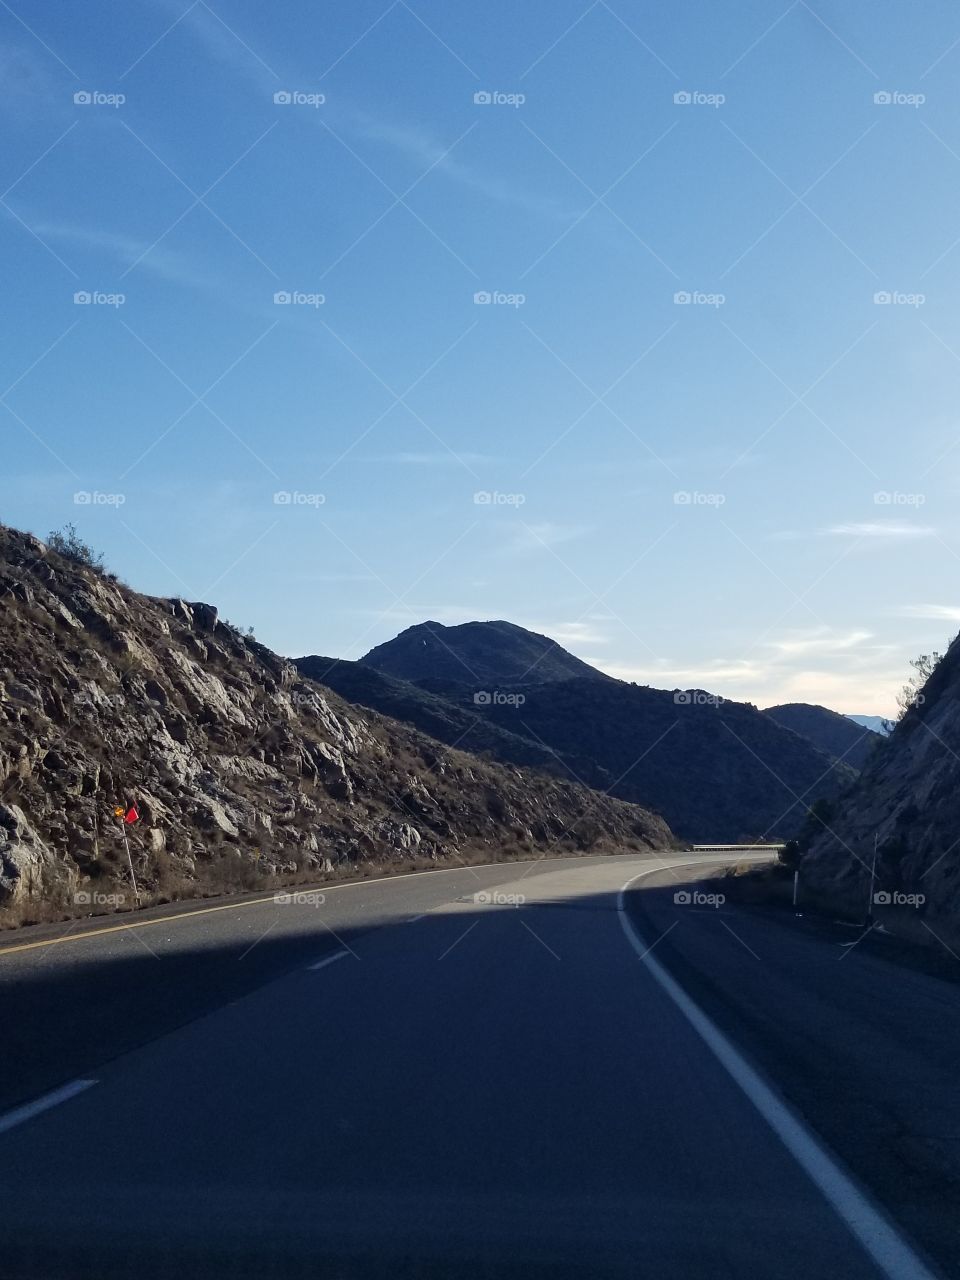 Sierra vista mountain range rock road